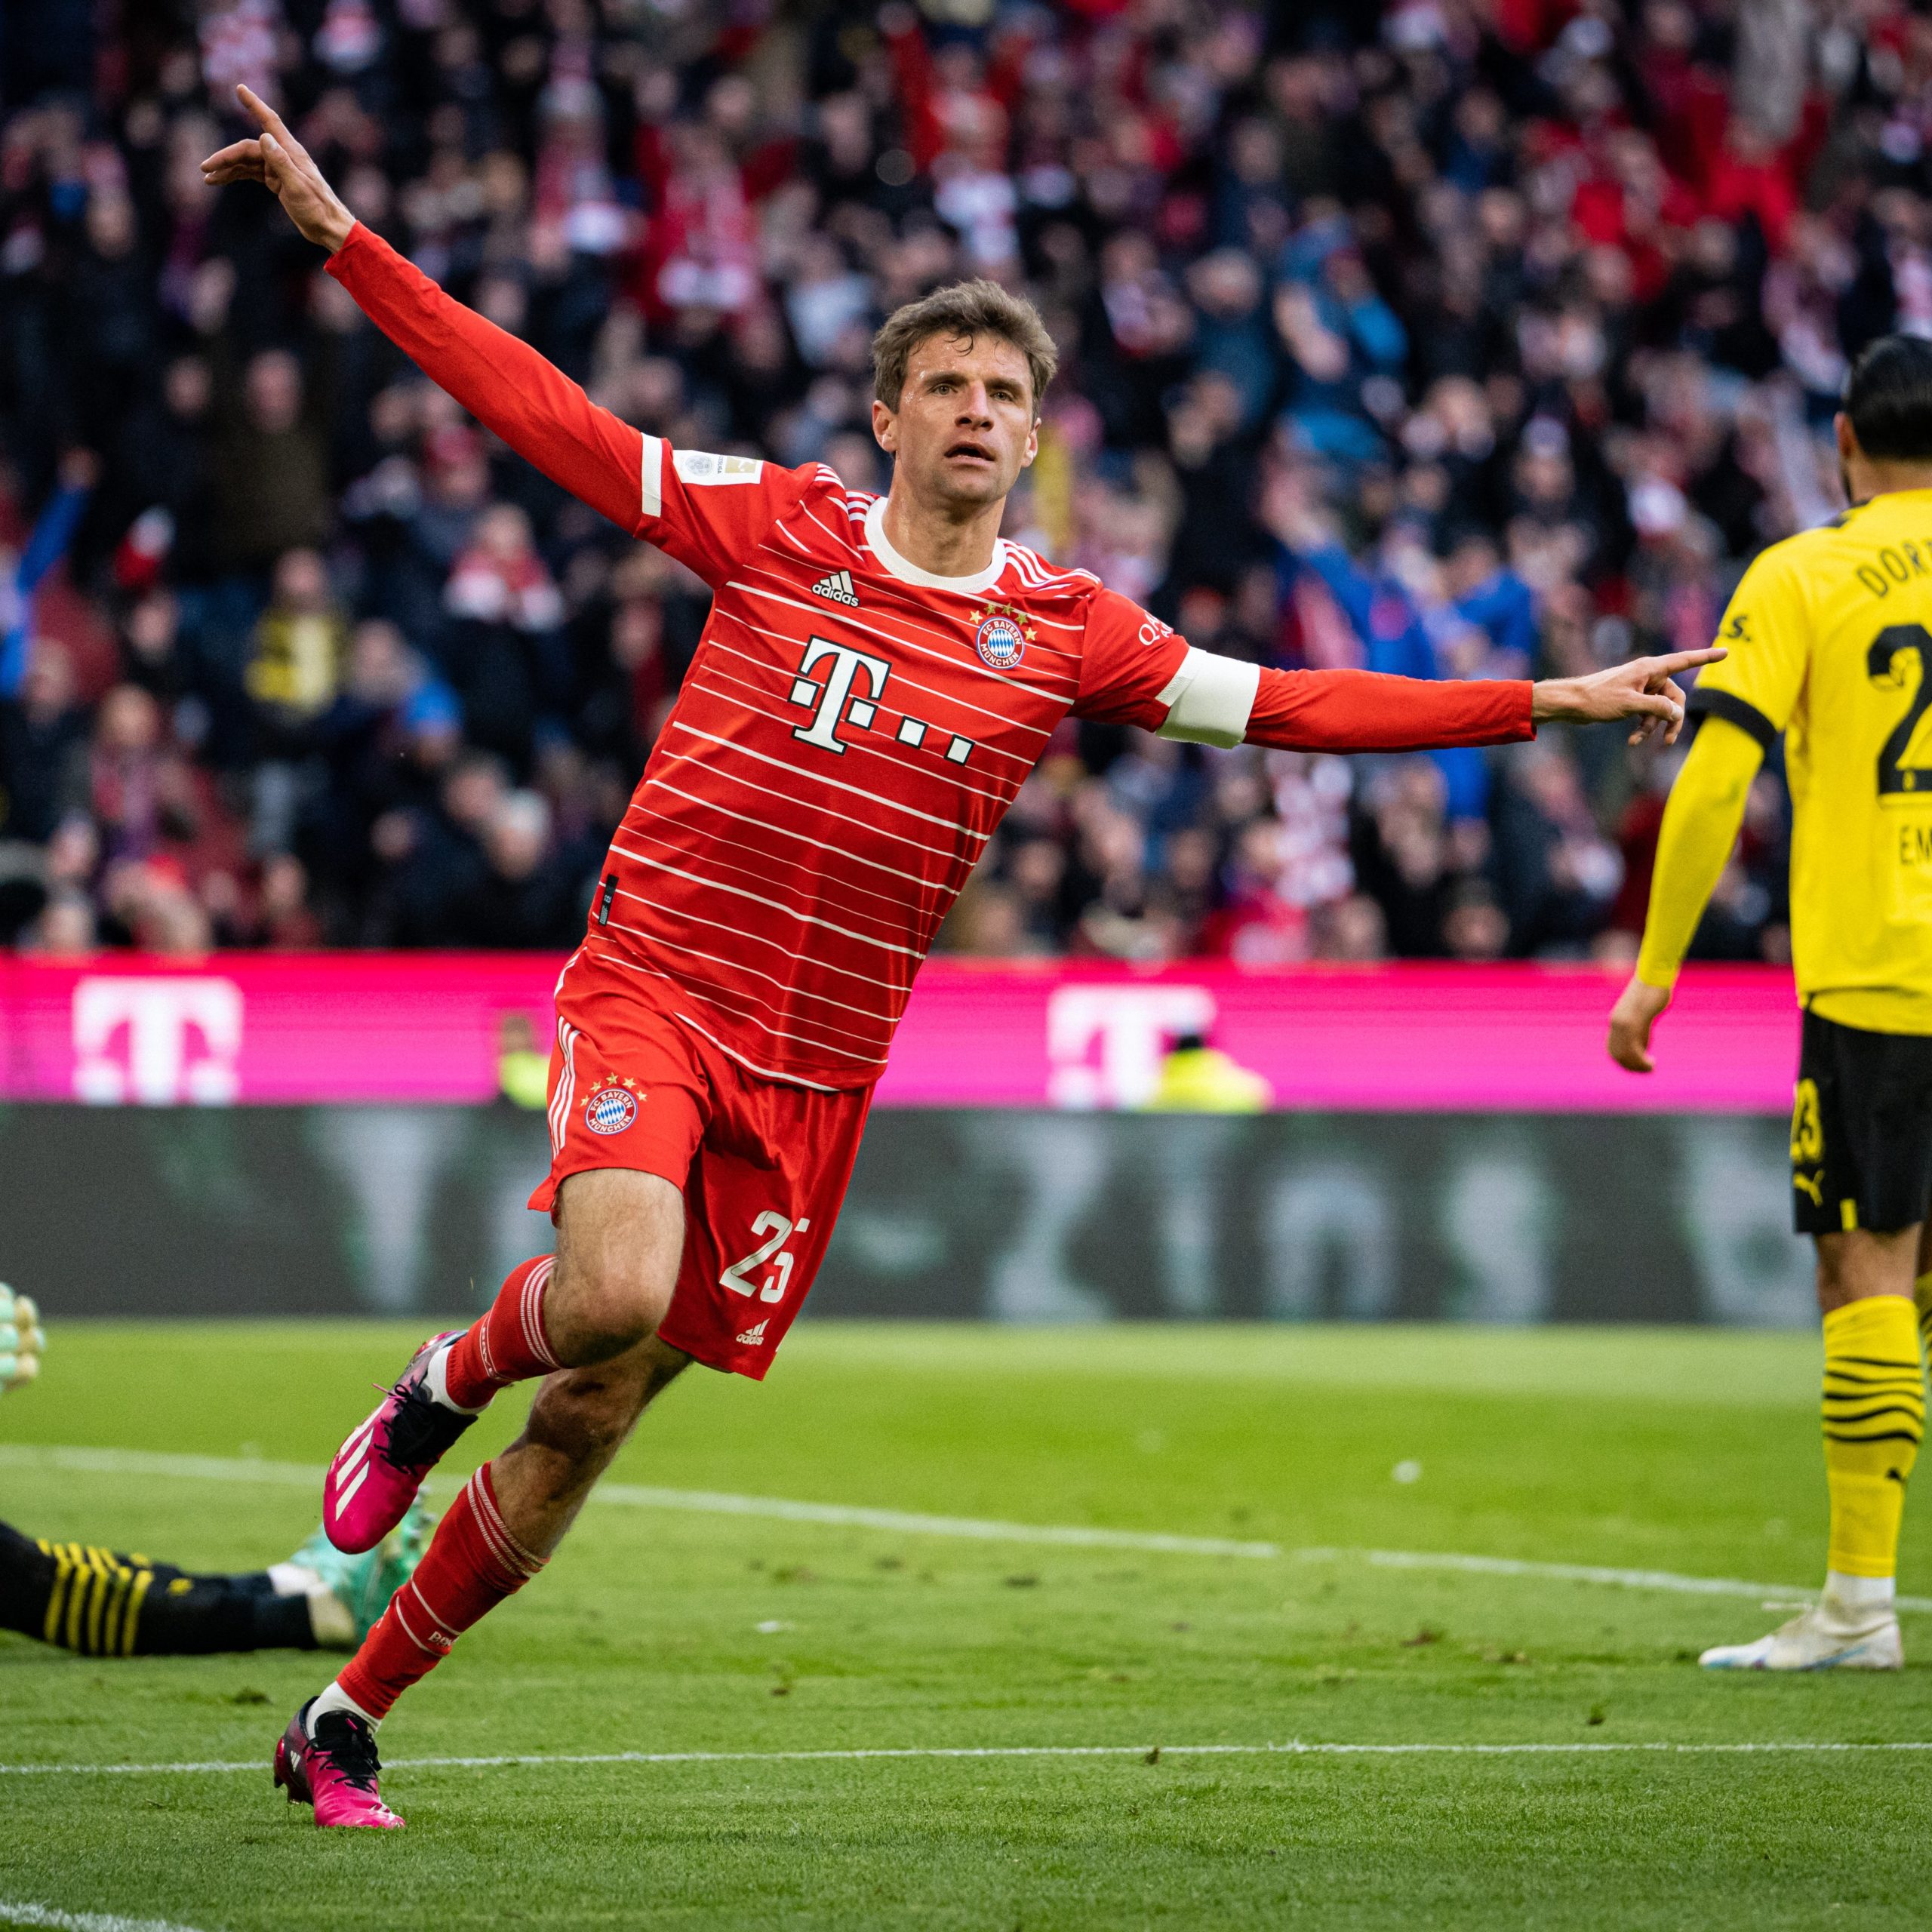 Der FC Bayern München hat Borussia Dortmund besiegt und ist an die Spitze der Bundesliga zurückgekehrt